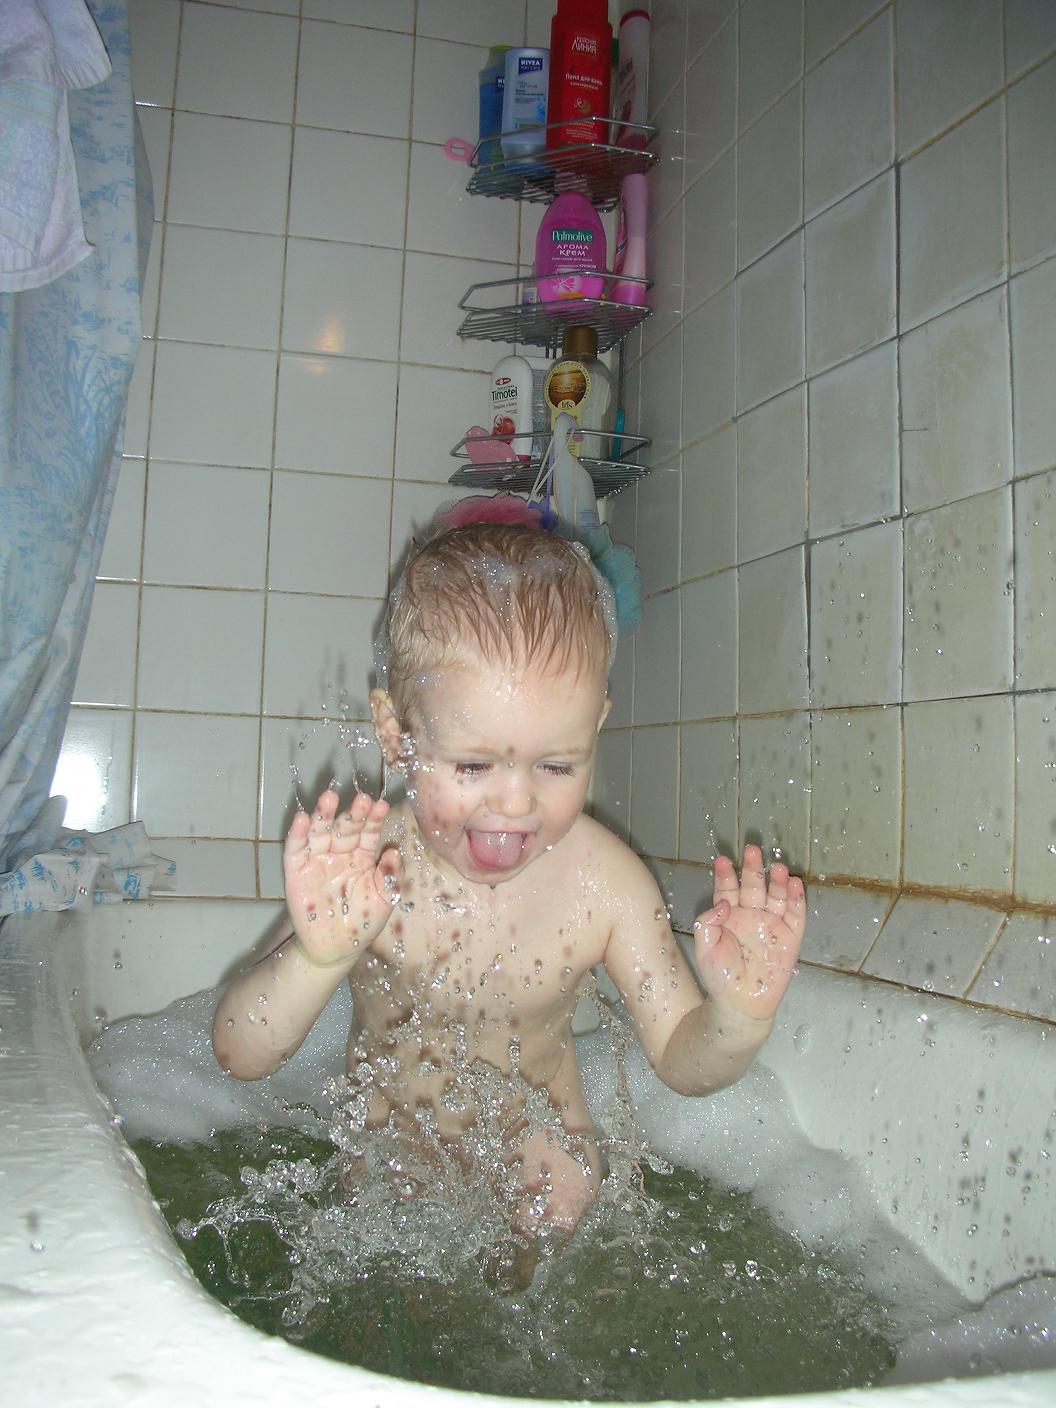 Дочь в душе видео. Дети купаются в душе. Дети моются в душе. Дети которые моются. Девочка купается в душе.